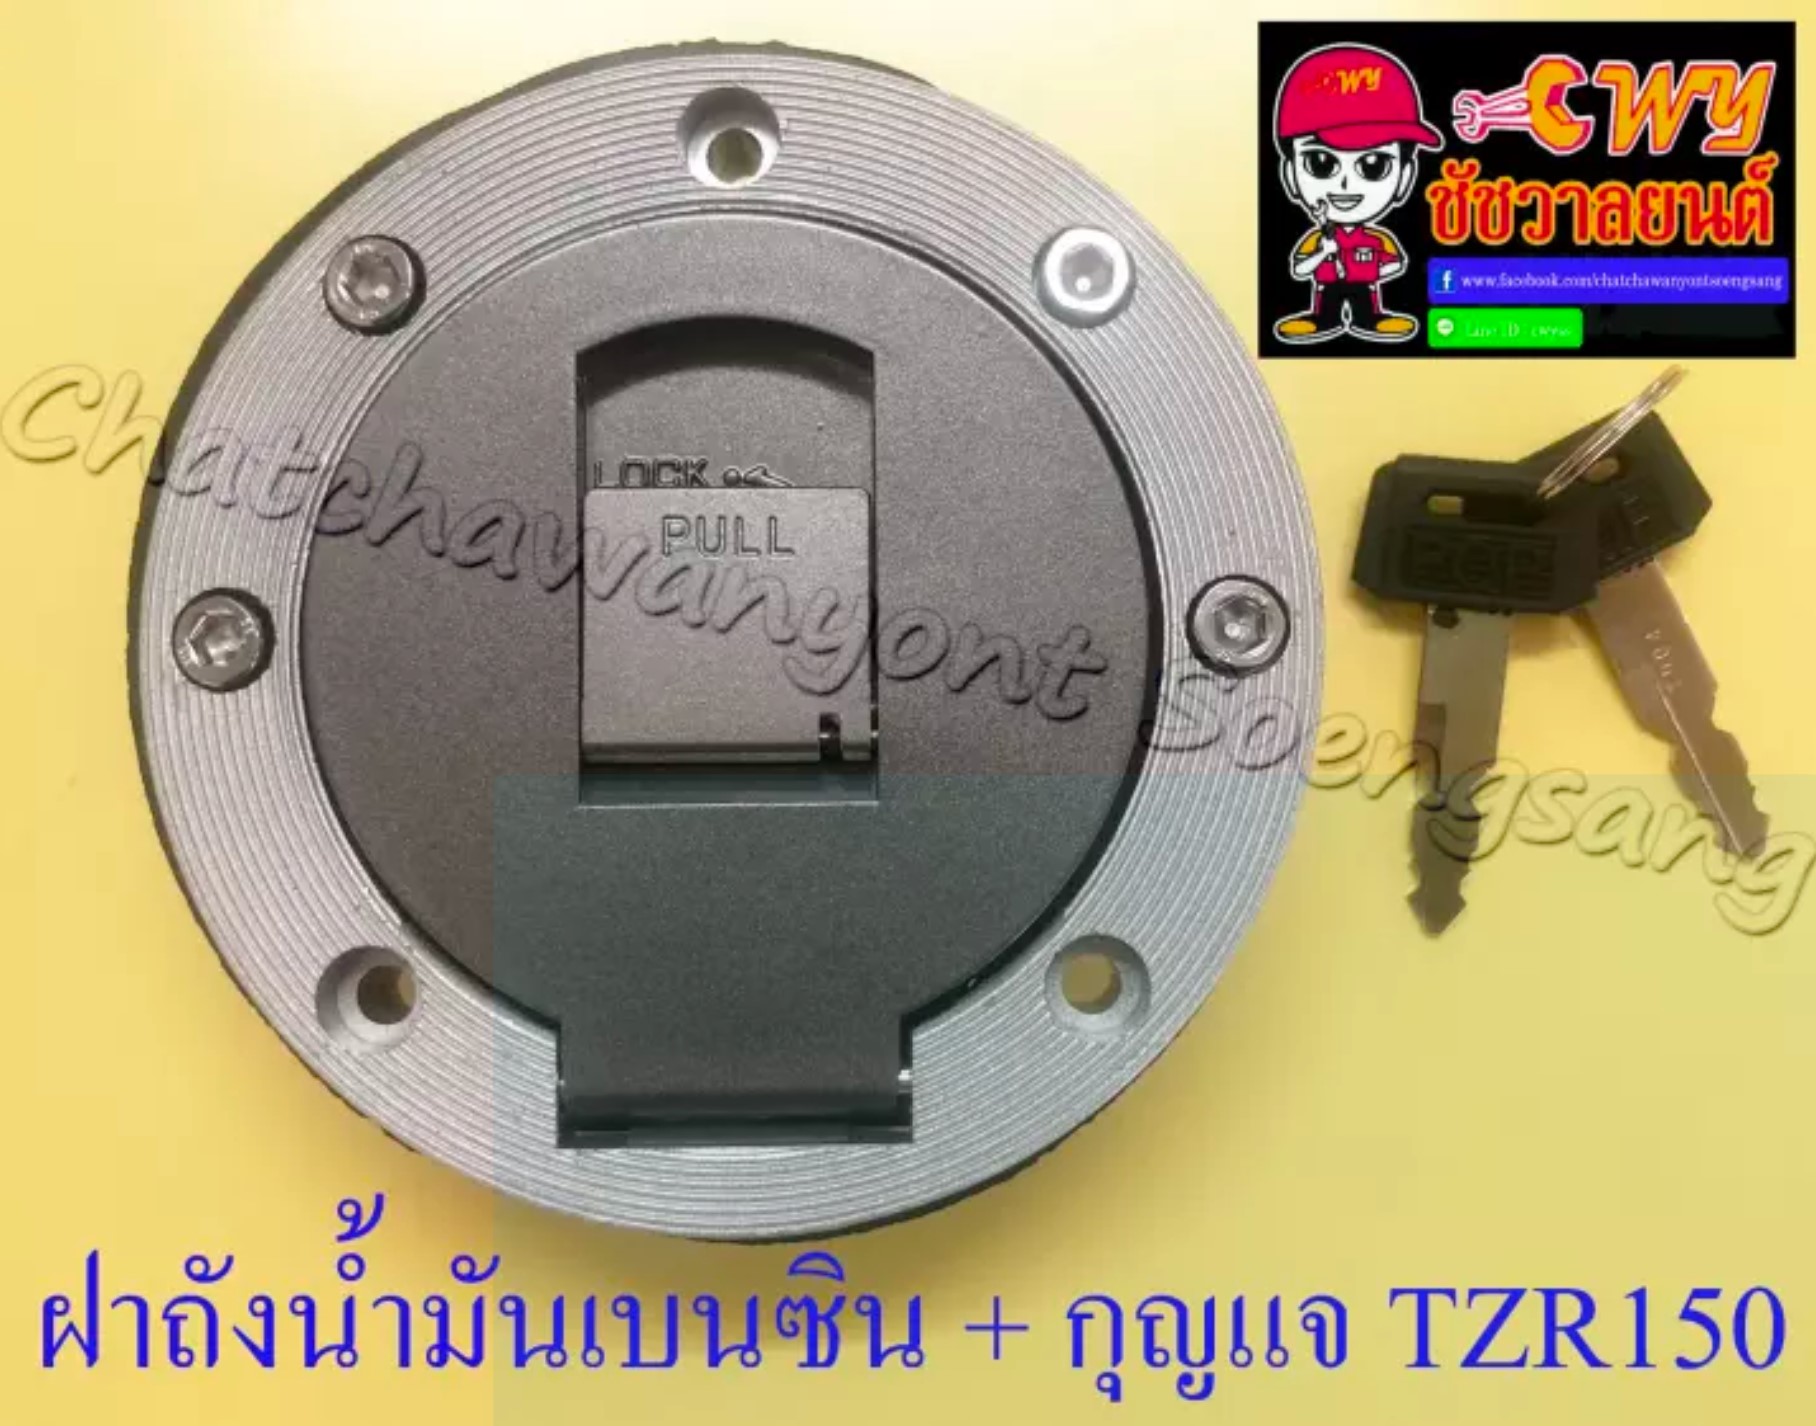 ฝาถังน้ำมันเบนซิน พร้อมลูกกุญแจ TZR150 VR150-R (มียางรอง กับน็อตมาให้) (005651)